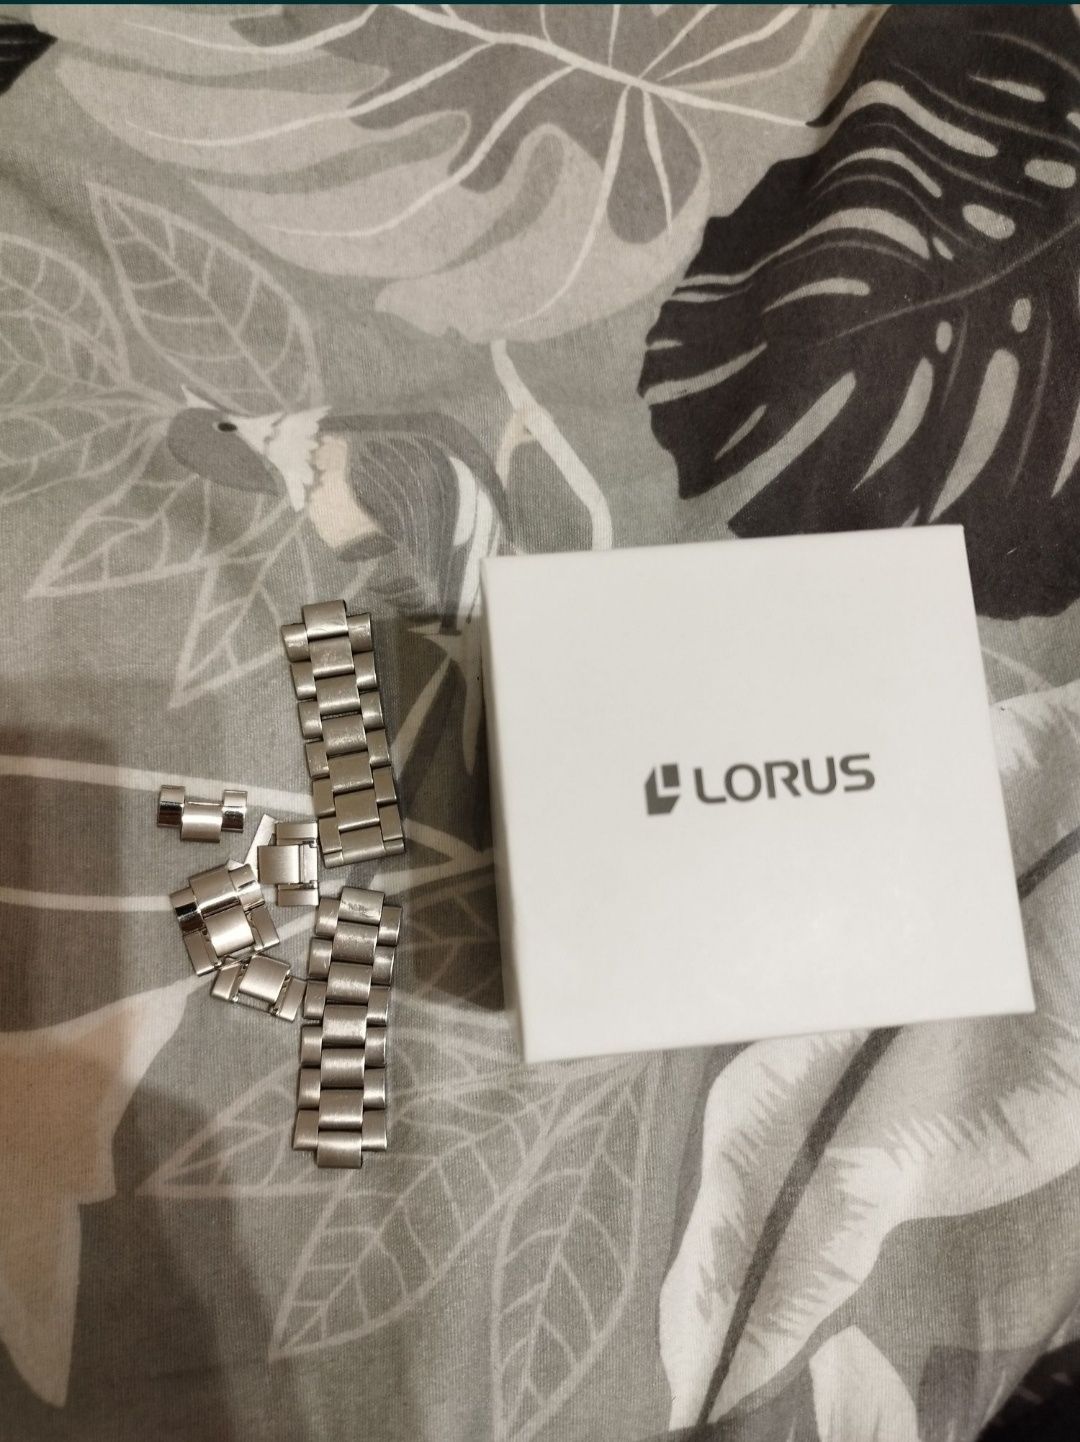 Męski zegarek Lorus